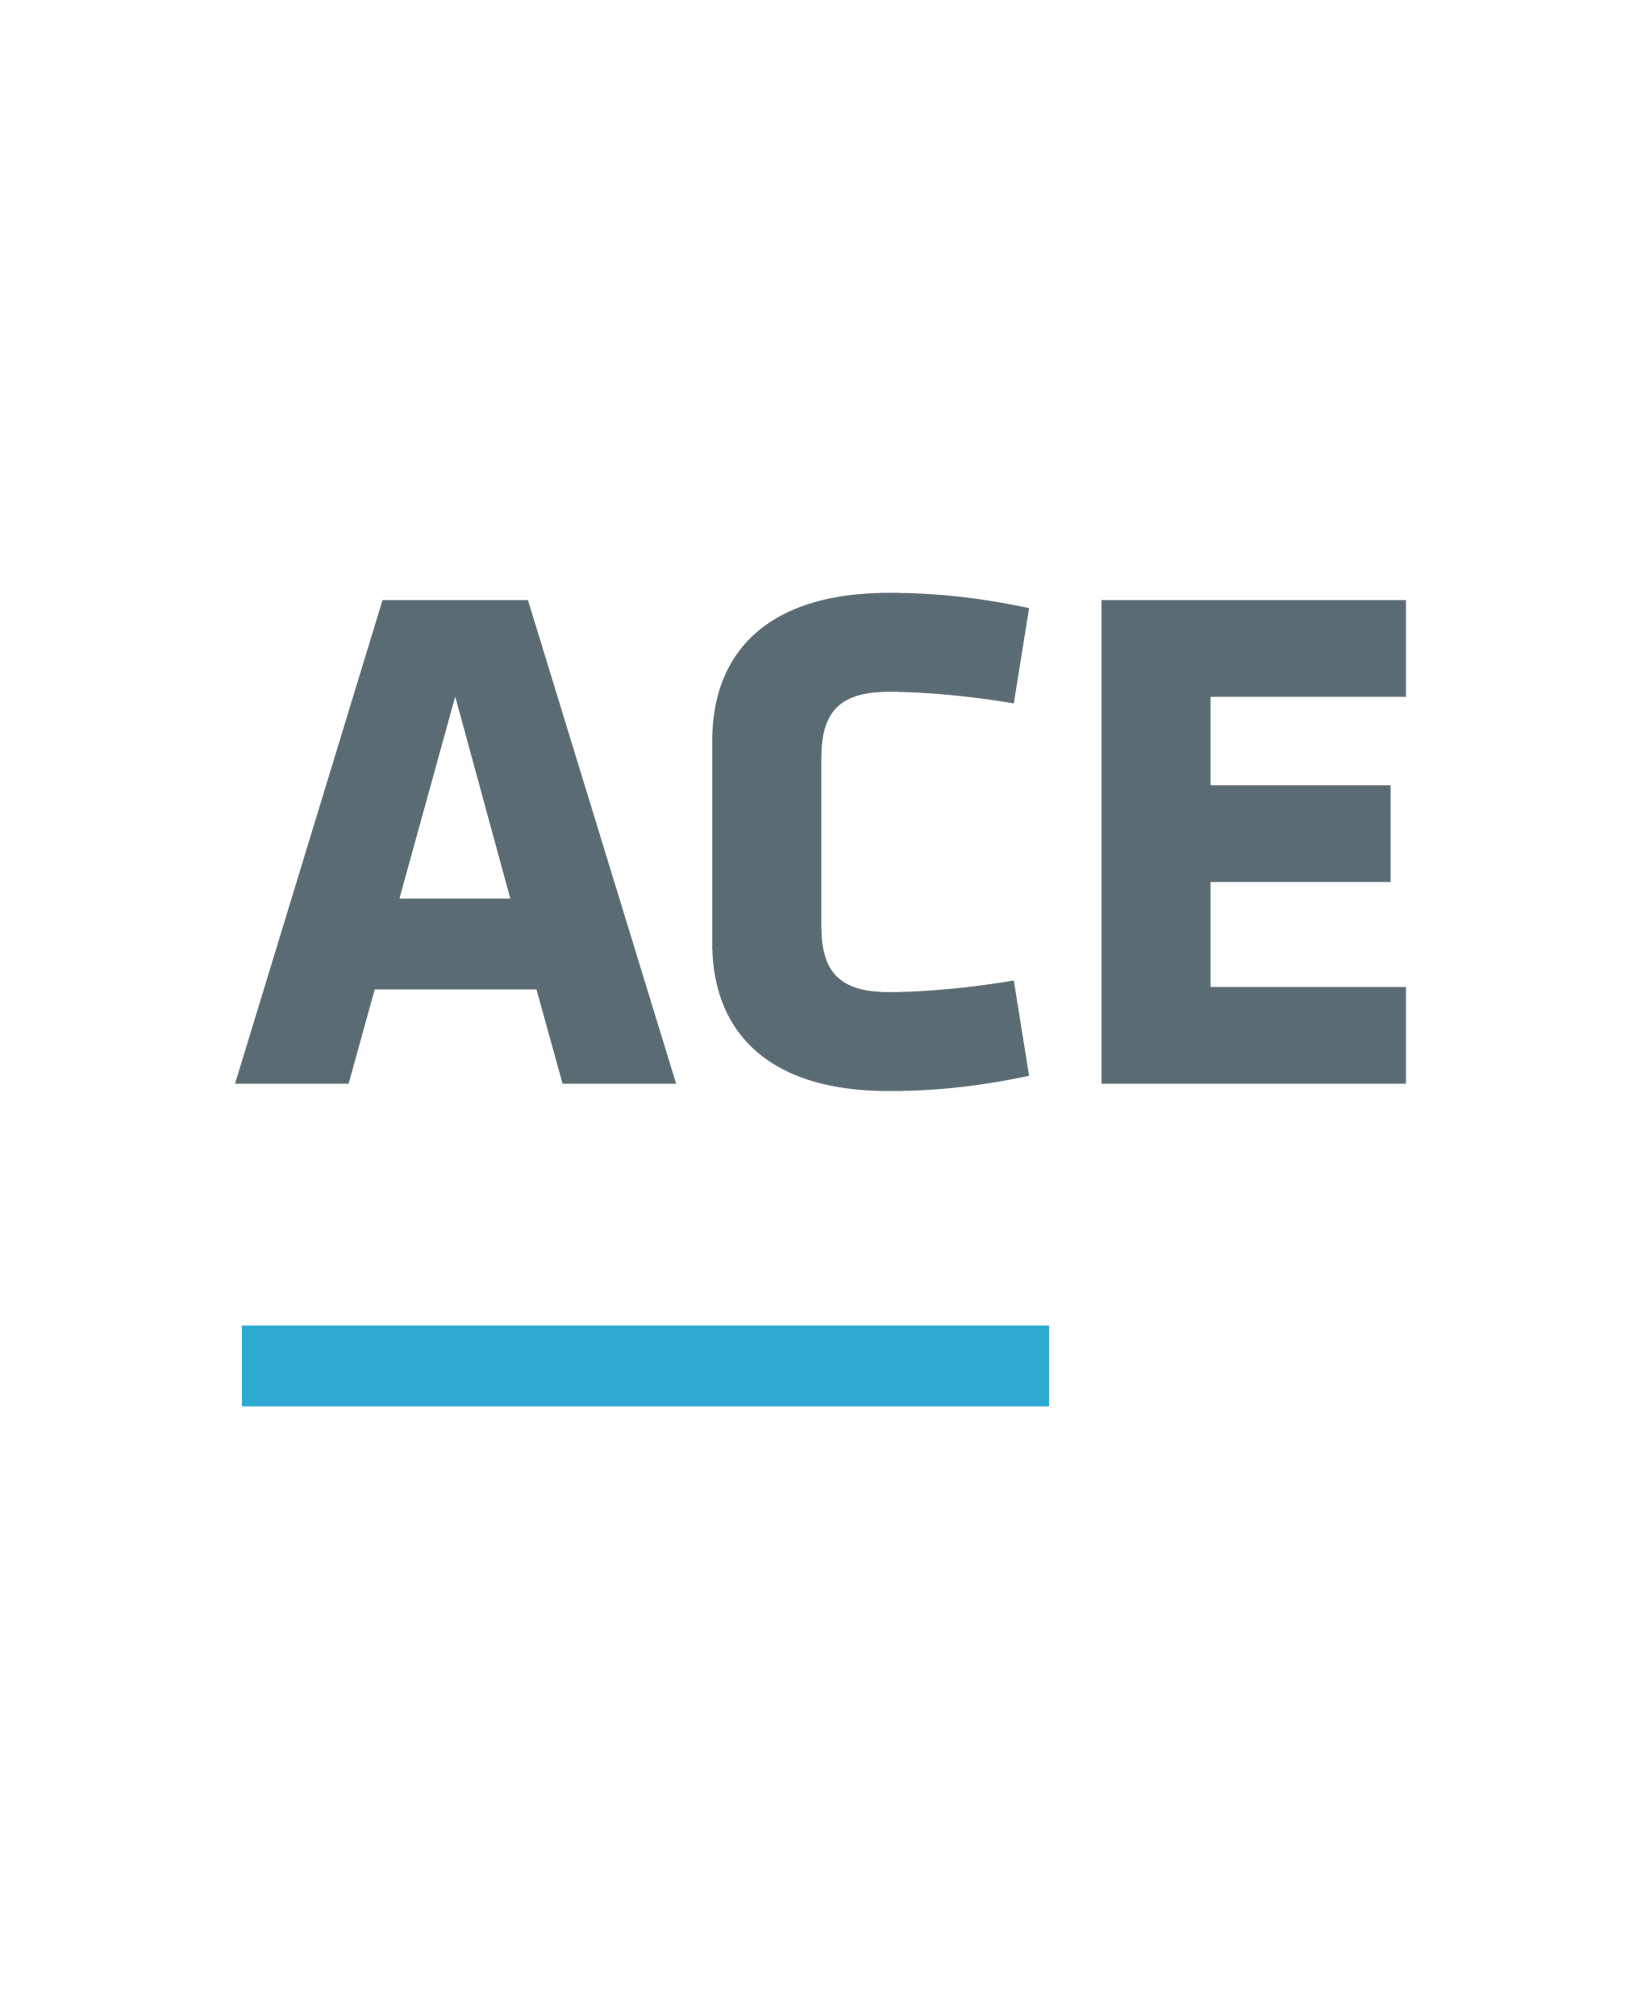 ace_positiv_logo_ace_logo